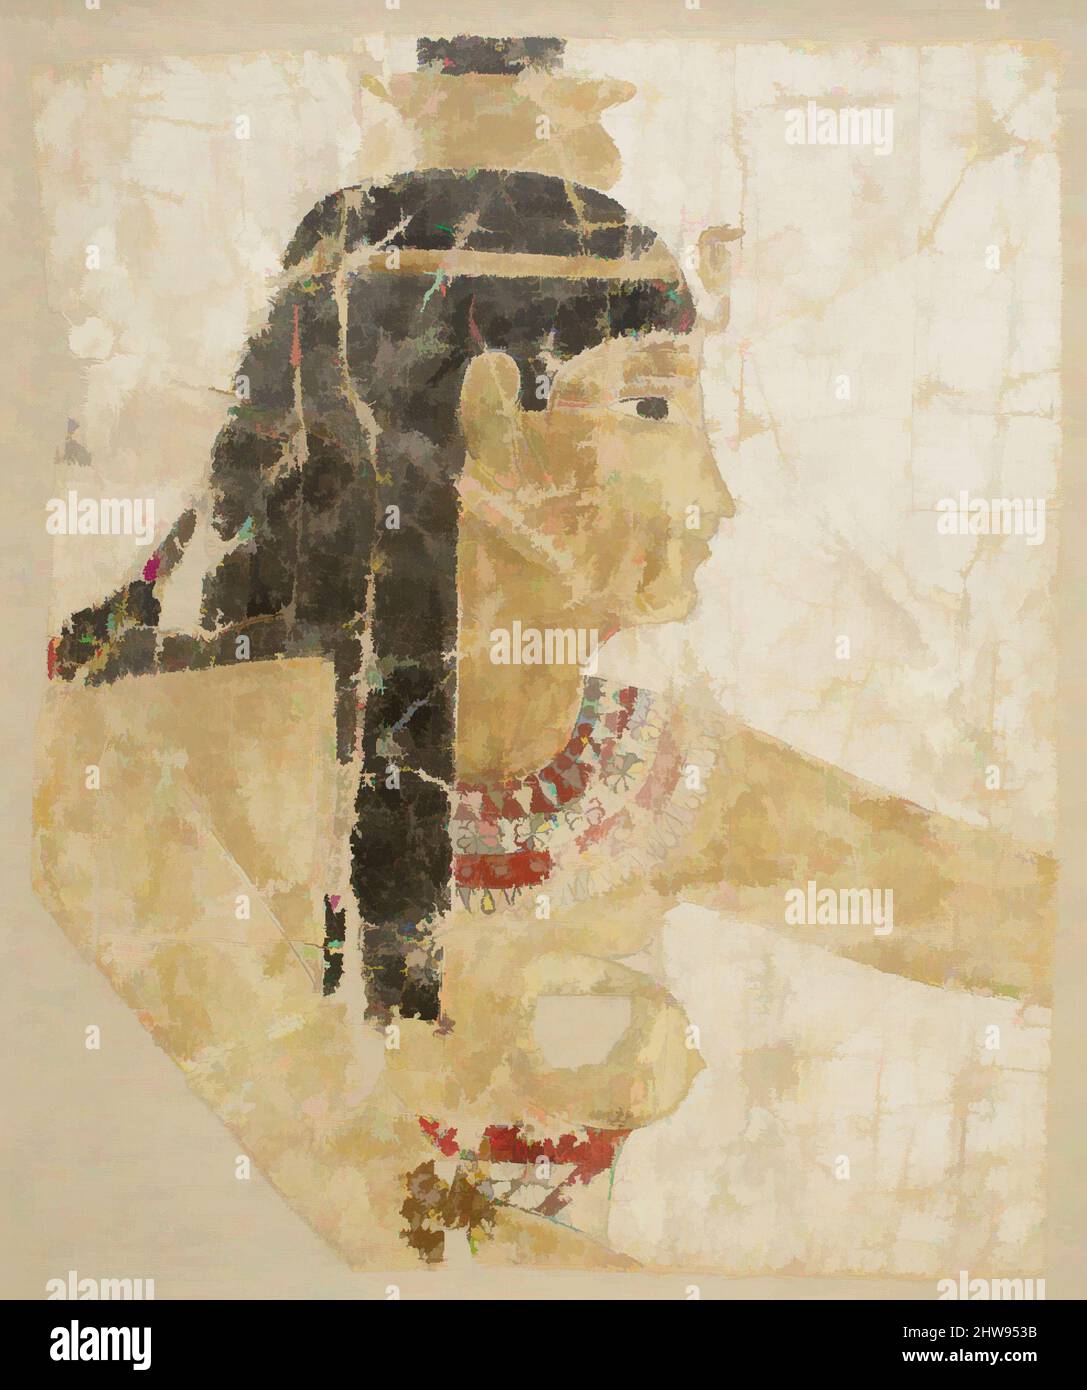 Arte ispirata da frammenti di Sindone dipinti, di età tolemaica o romana, 1st secolo AC–1st secolo d.C., dall'Egitto, lino, gesso, pittura, H. 38 cm (14 15/16 poll.); W. 30,2 cm (11 7/8 poll.); incorniciato: H. 44 cm (17 5/16 poll.); W. 36 cm (14 3/16 poll.); D. 4,4 cm (1 3/4 poll.), come moglie e sorella di, opere classiche modernizzate da Artotop con un tuffo di modernità. Forme, colore e valore, impatto visivo accattivante sulle emozioni artistiche attraverso la libertà delle opere d'arte in modo contemporaneo. Un messaggio senza tempo che persegue una nuova direzione selvaggiamente creativa. Artisti che si rivolgono al supporto digitale e creano l'NFT Artotop Foto Stock